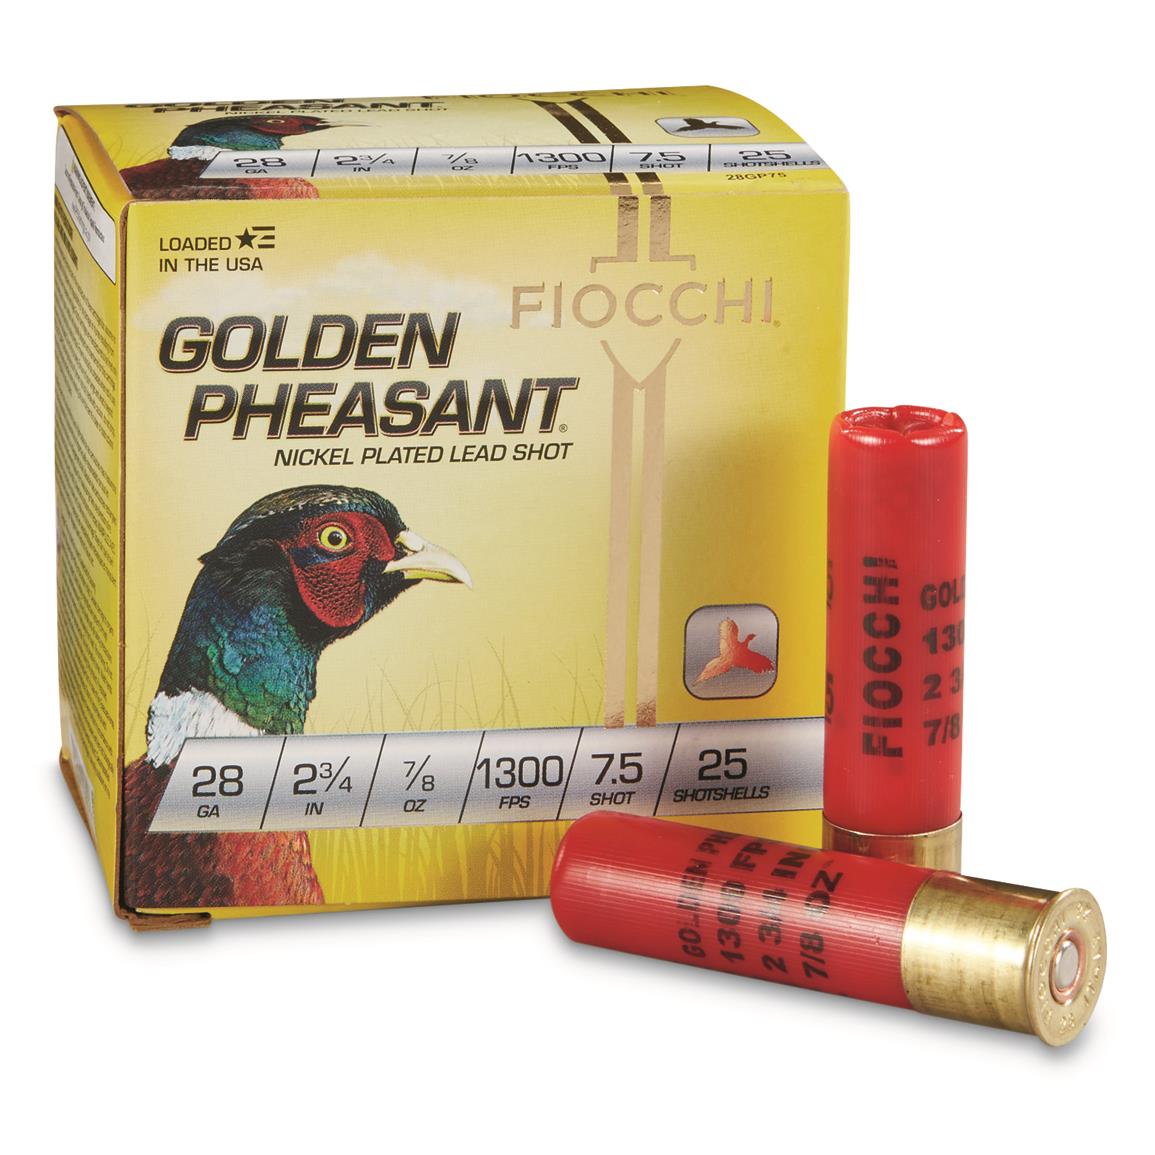 Fiocchi Golden Pheasant, 28 Gauge, 2 3/4", 7/8 oz., 25 Rounds